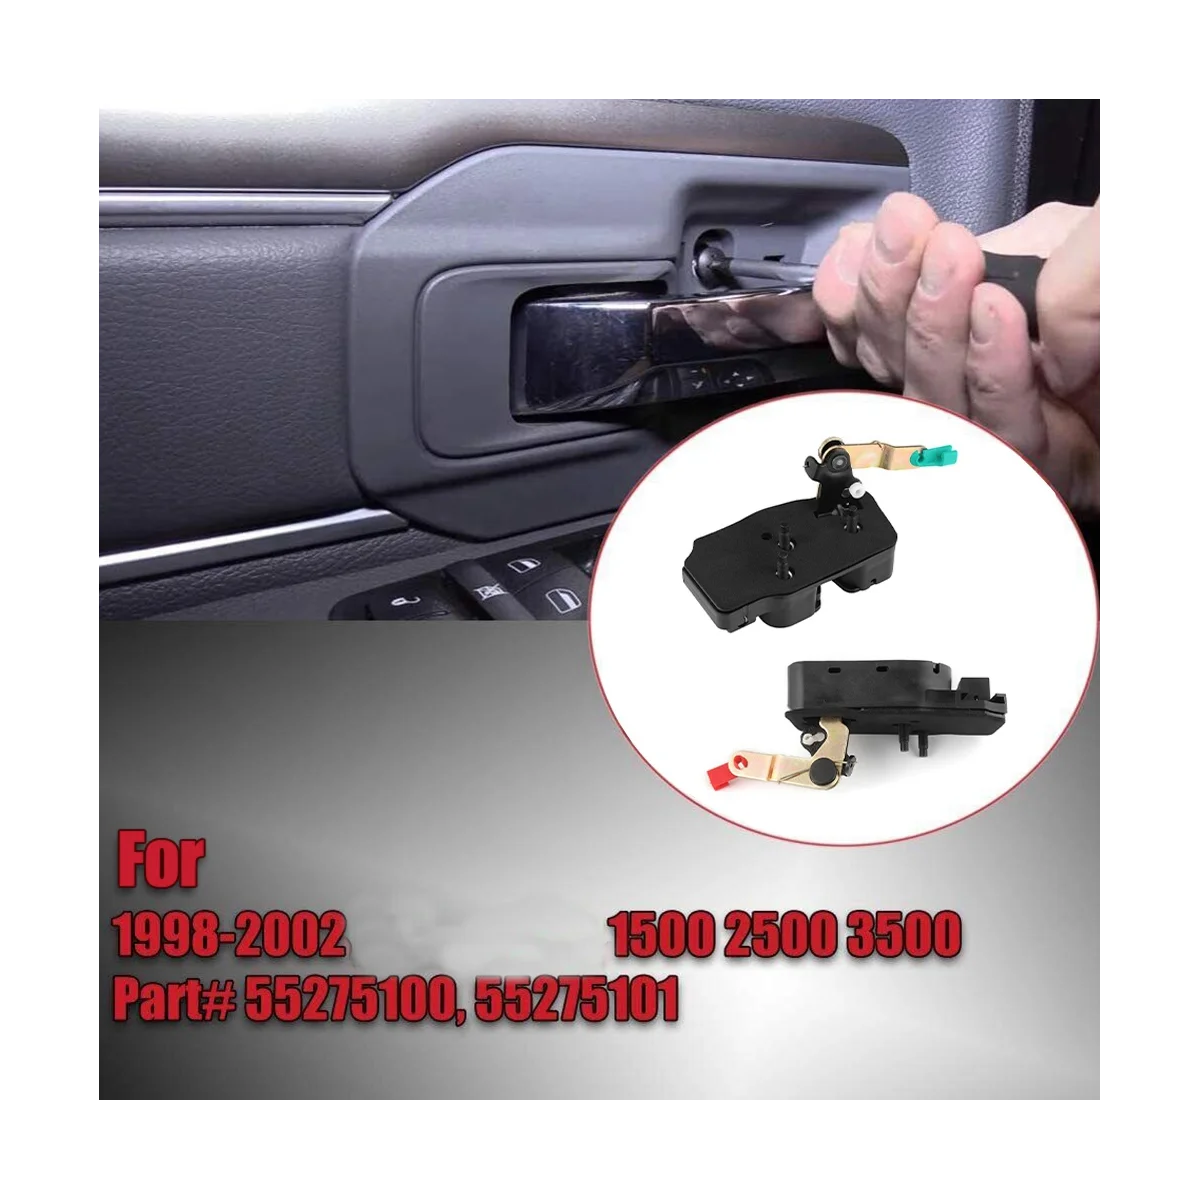 

1Pair L&R Rear Door Quad Cab Lower Latch Lock for Dodge Ram 1500 2500 3500 1998-2002 55275101 55275100